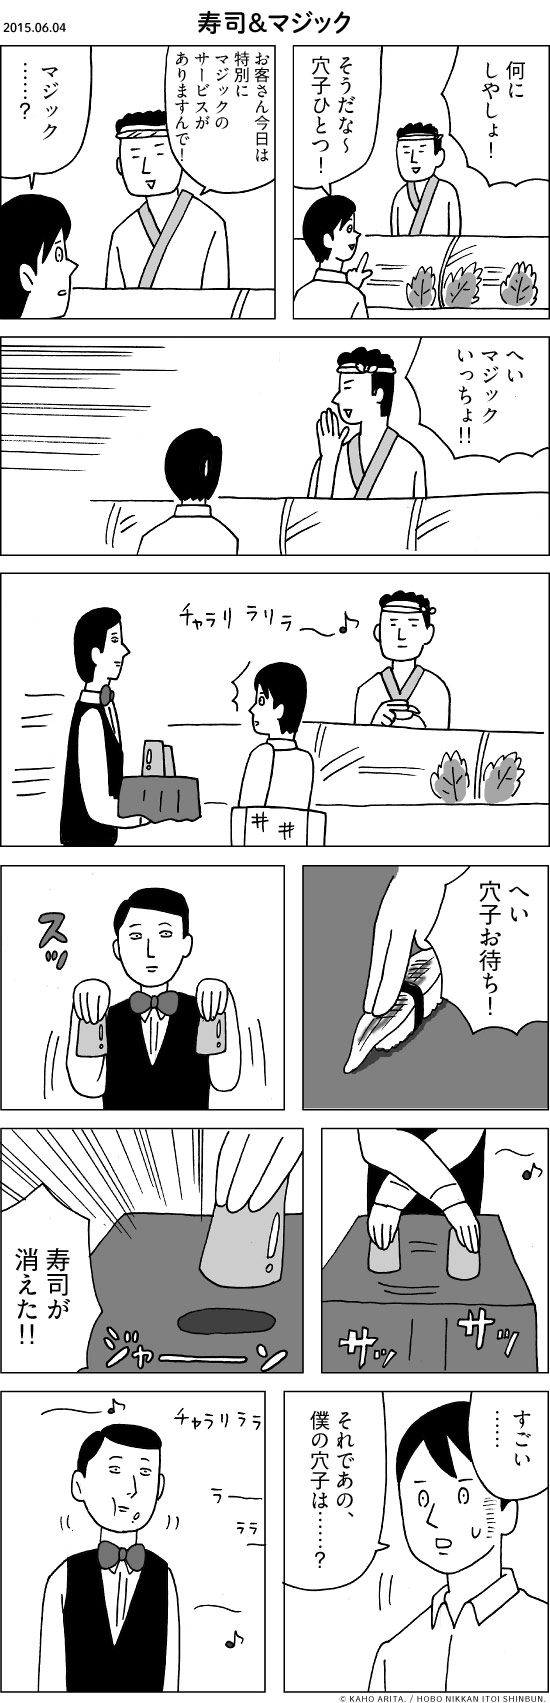 2015.06.04 寿司＆マジック